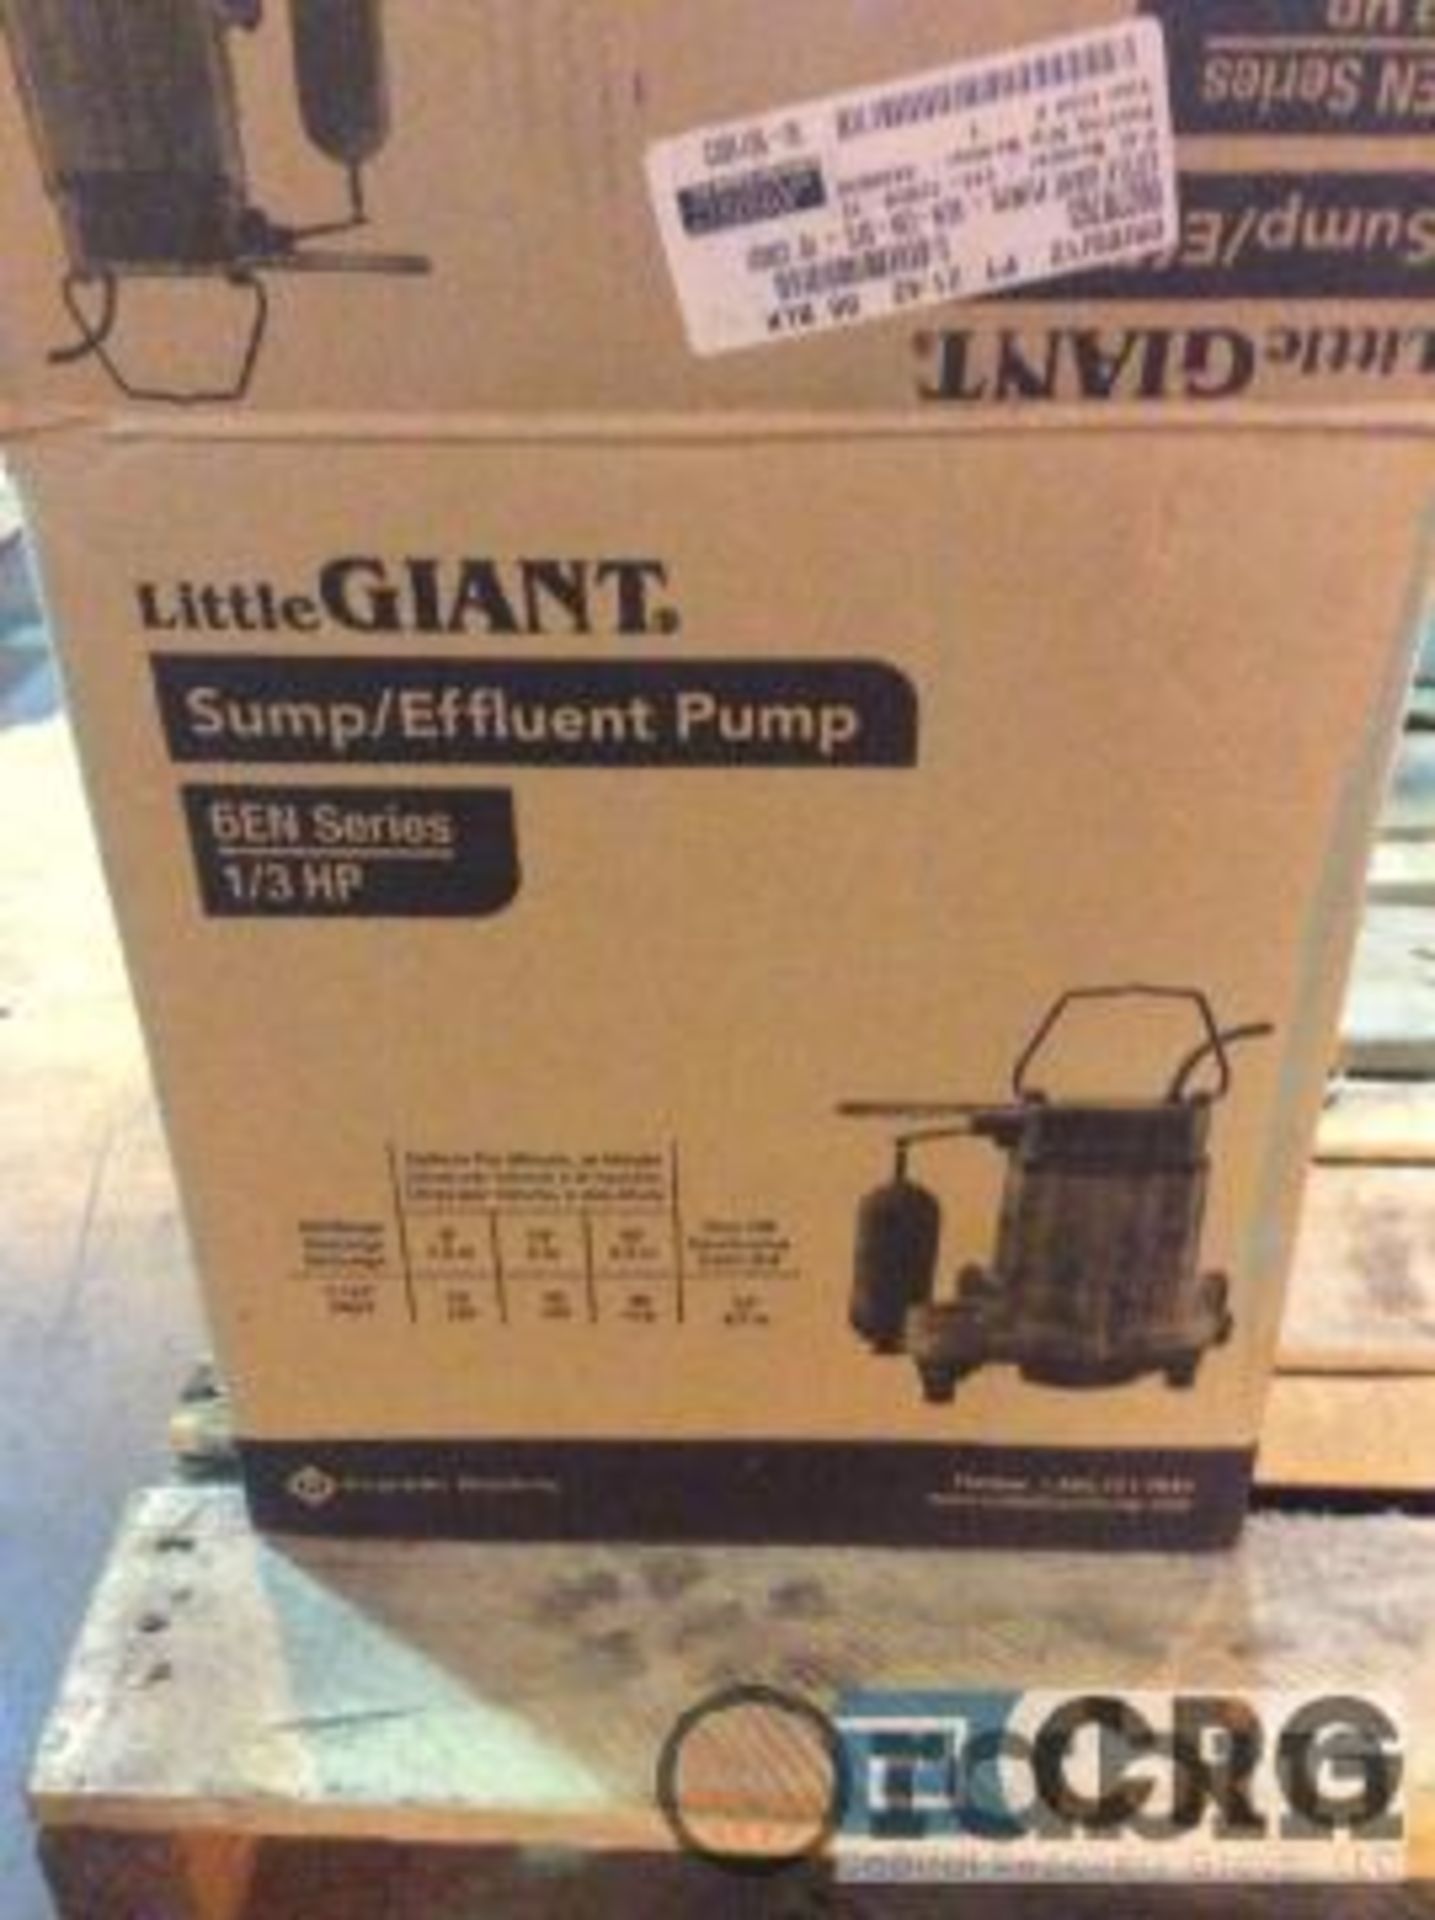 Sump / effluent pump 1/3 hp. NEW IN BOX [Peoria] - Image 2 of 2